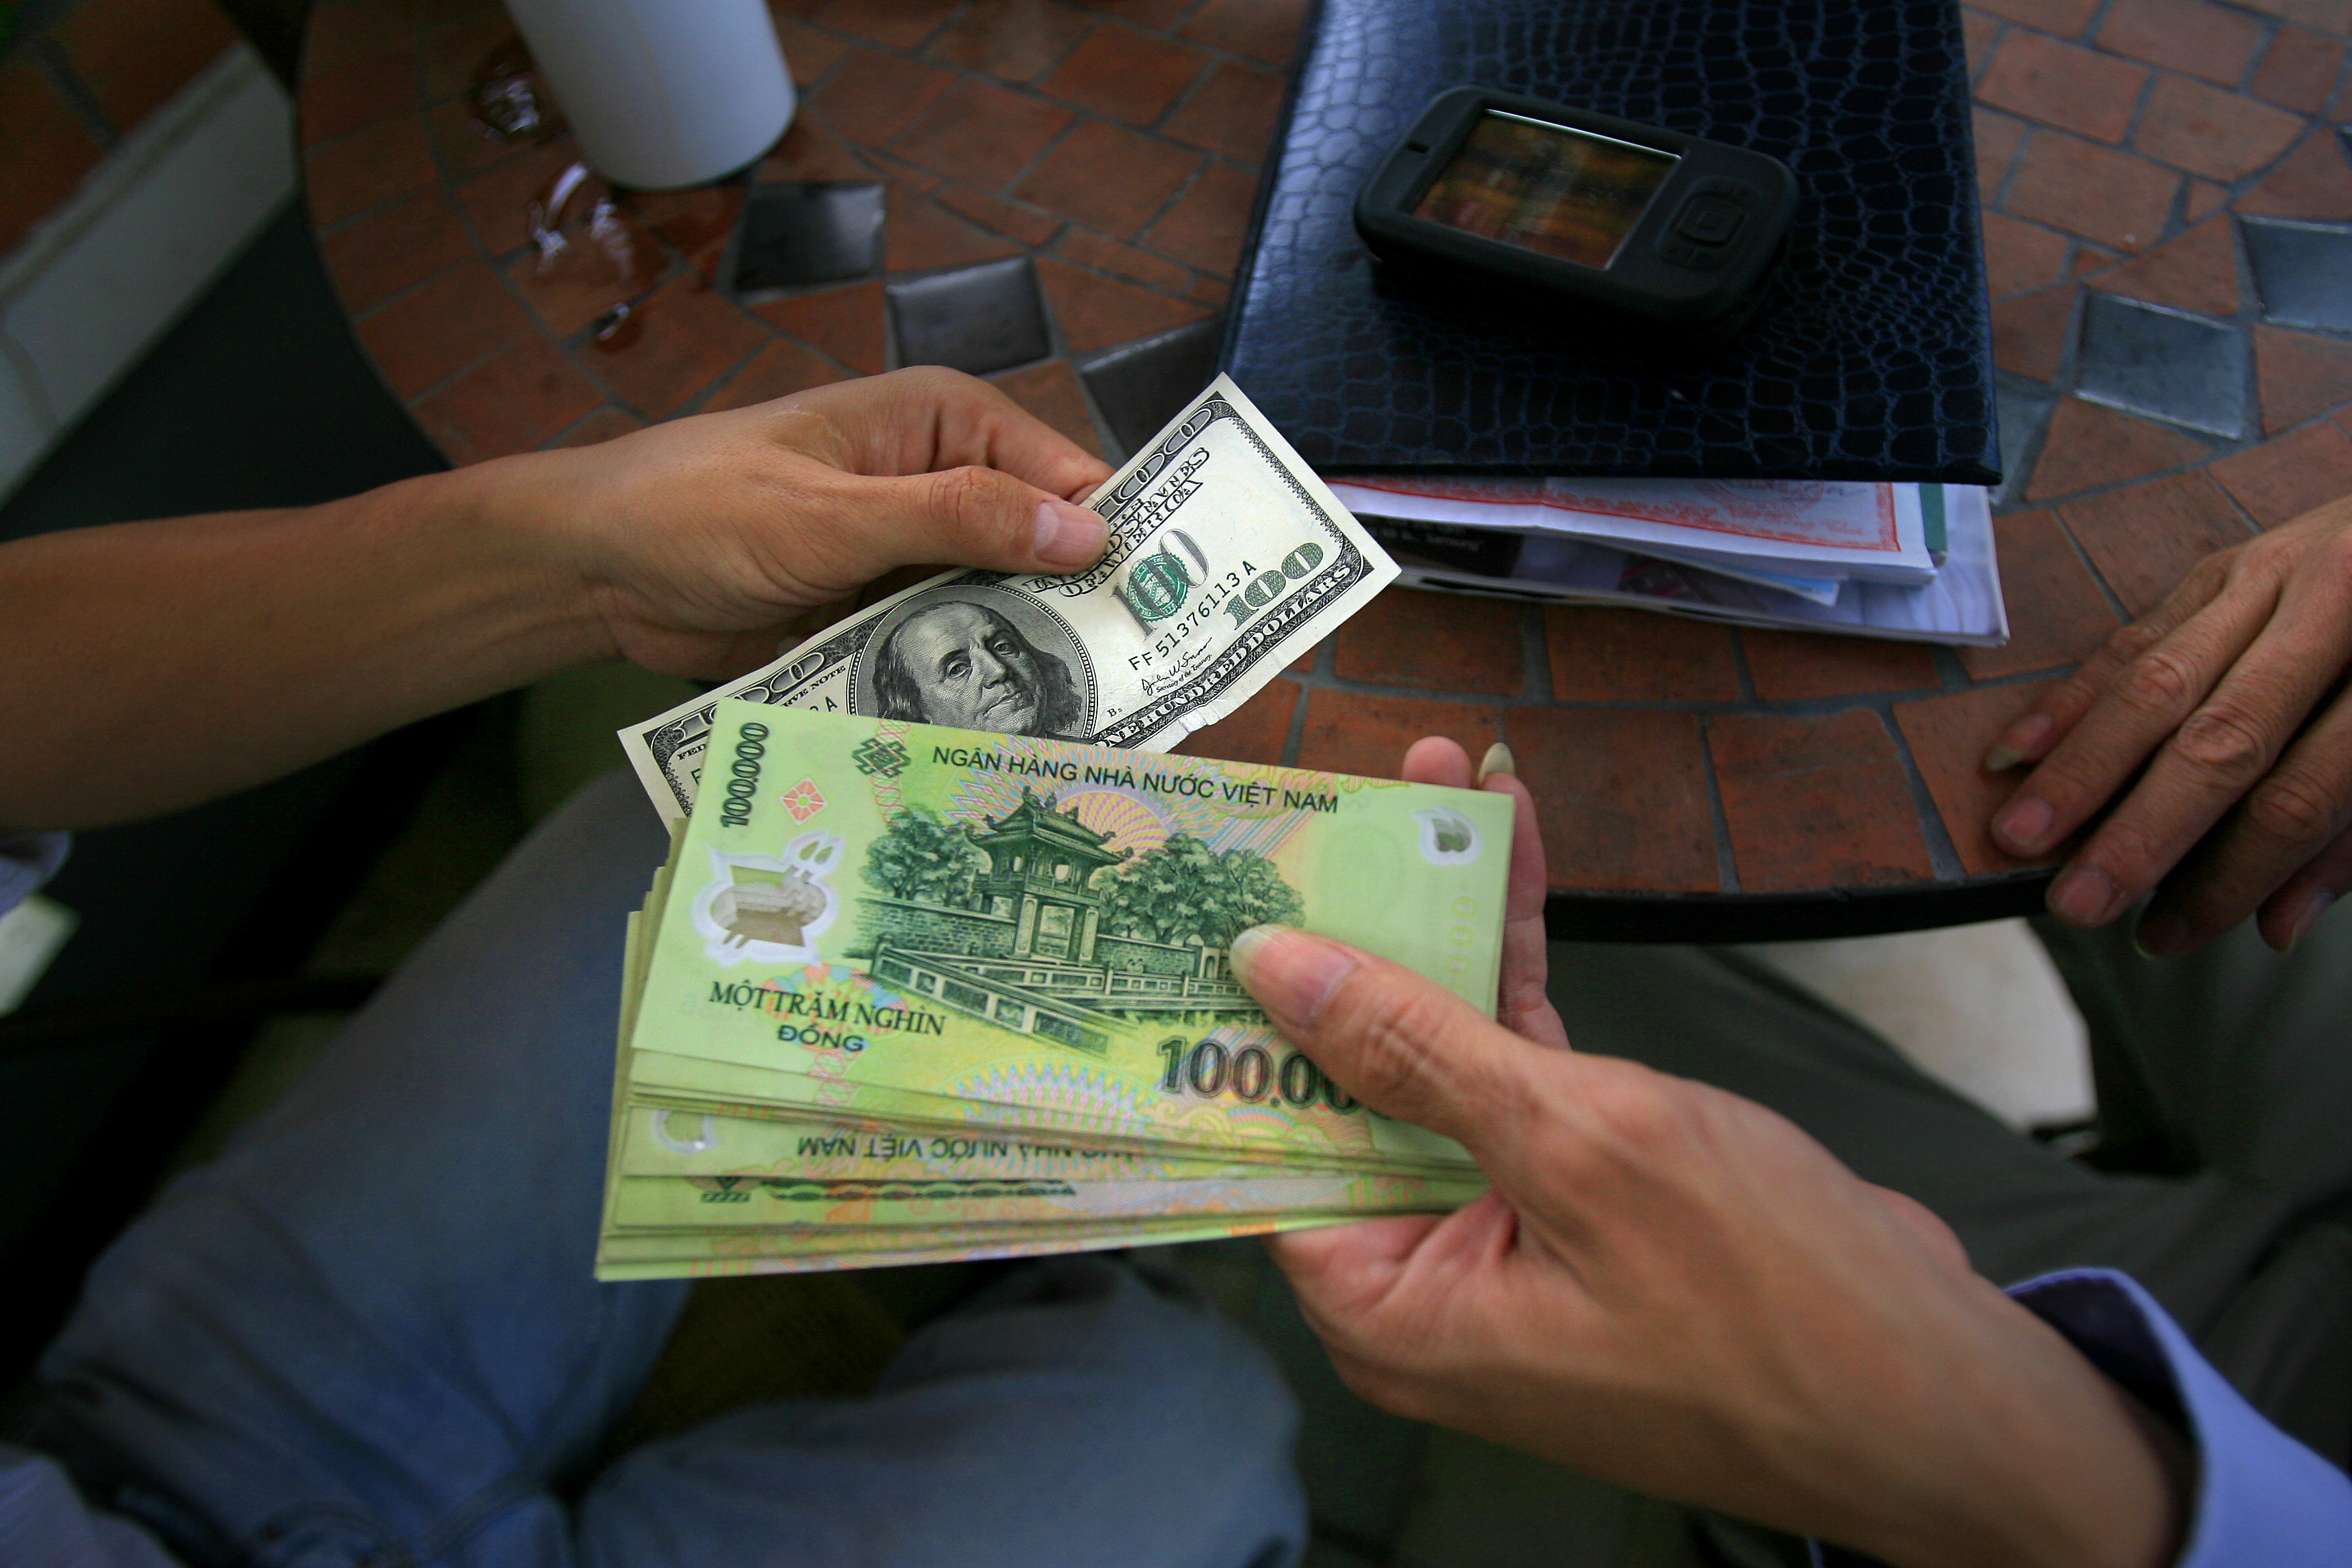 Doanh nghiệp Việt Nam vẫn thích chịn USD trong giao thương quốc tế. Ảnh: Lê Quang Nhật